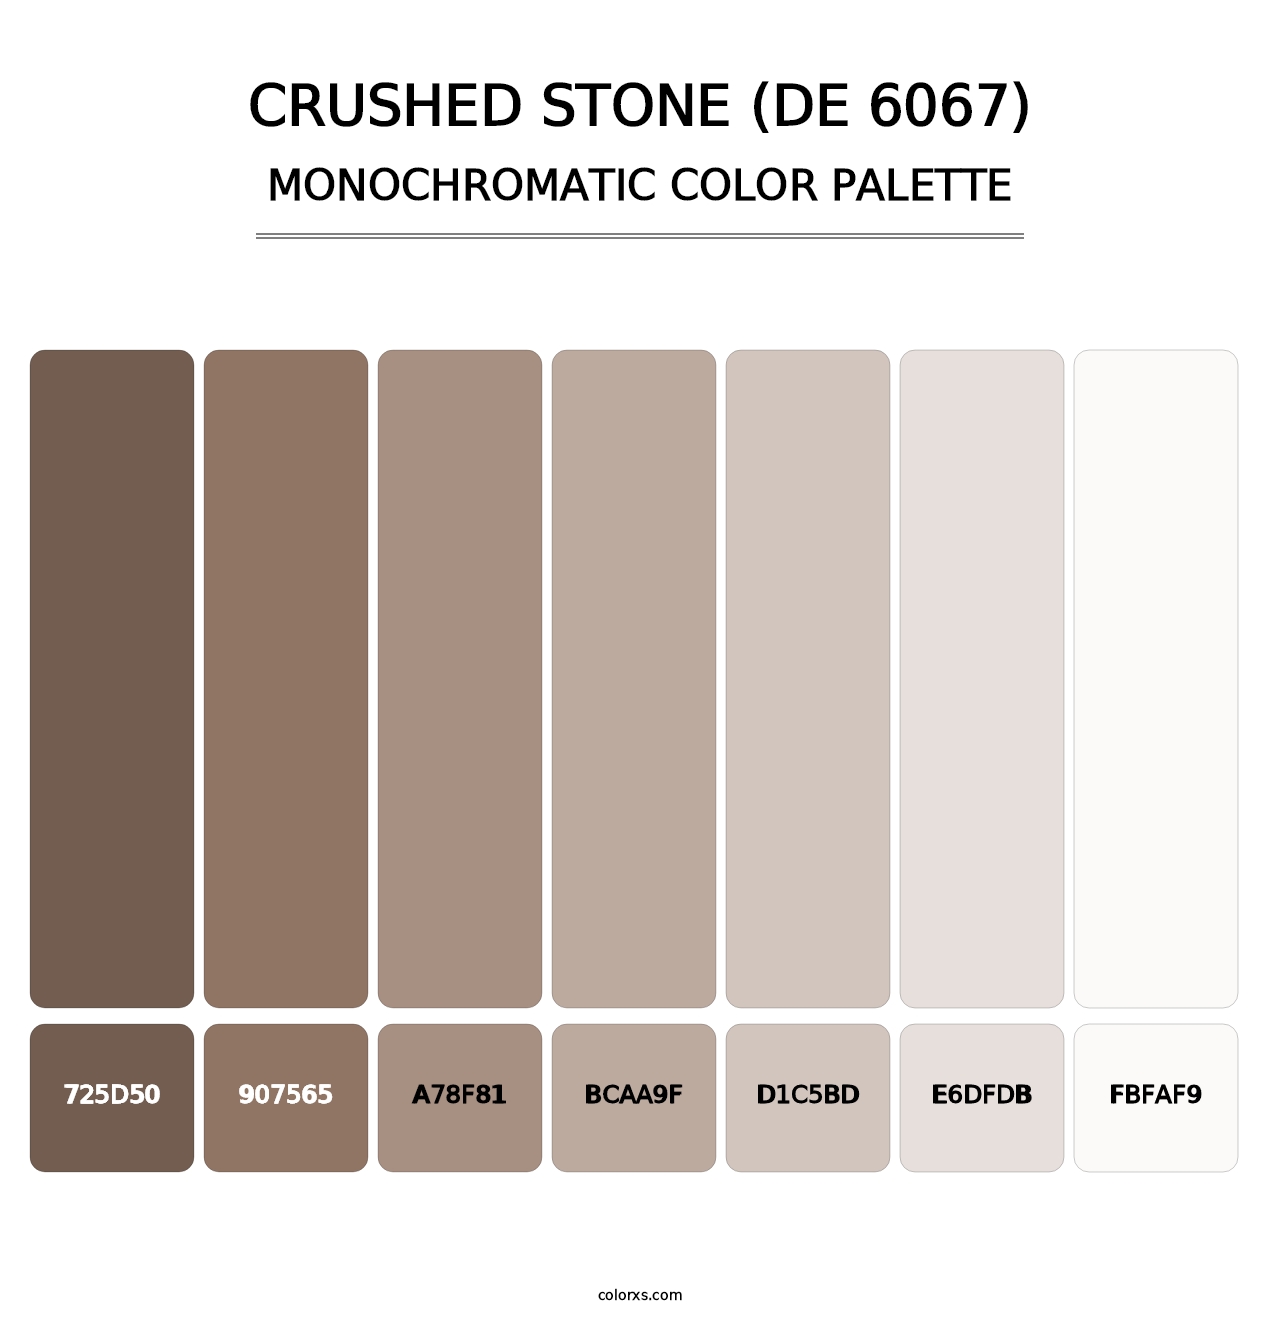 Crushed Stone (DE 6067) - Monochromatic Color Palette